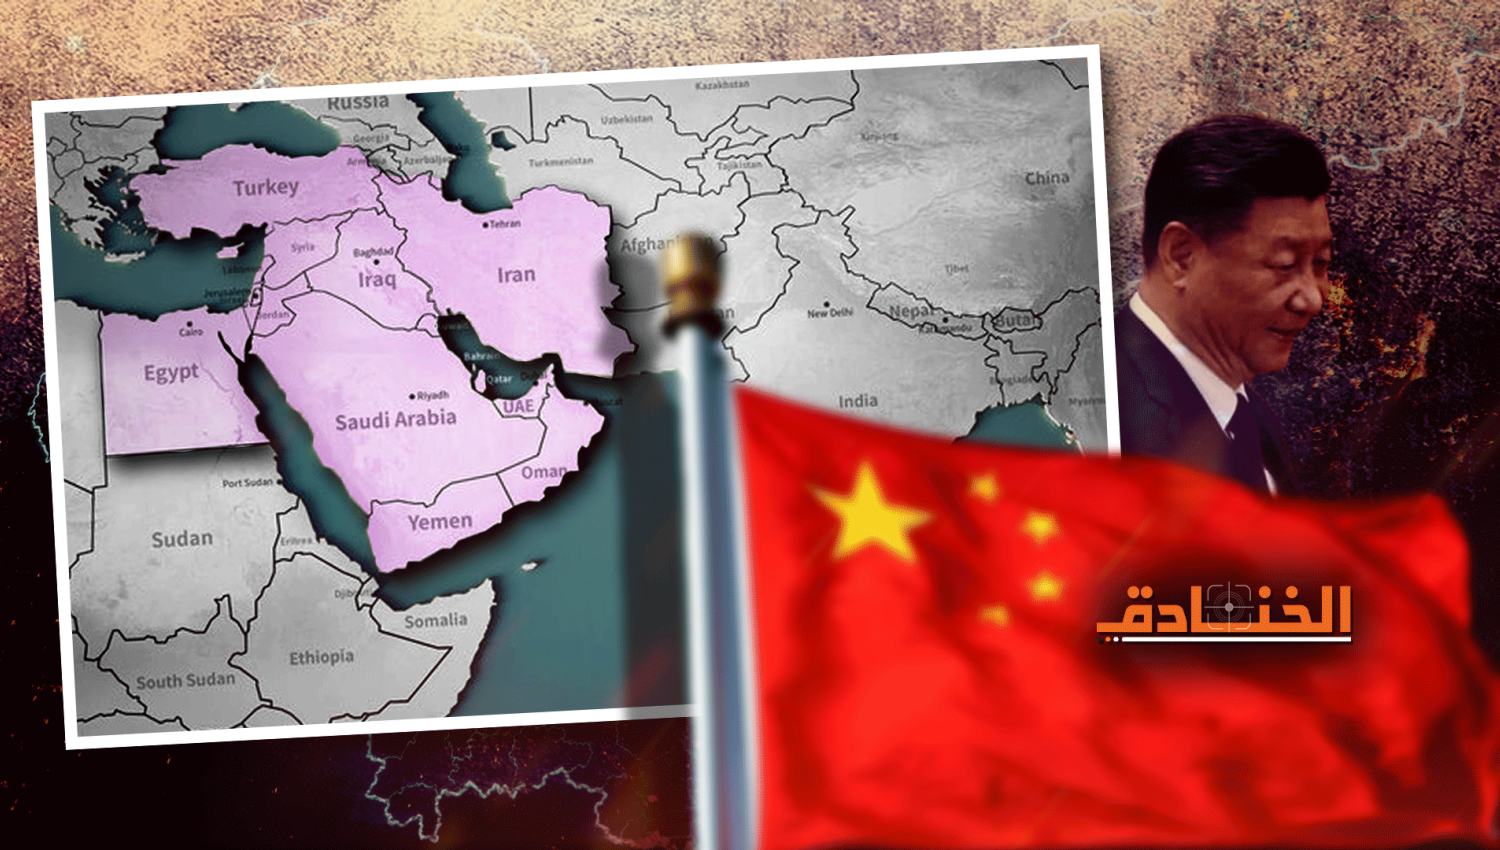 حركة الصين في الشرق الأوسط